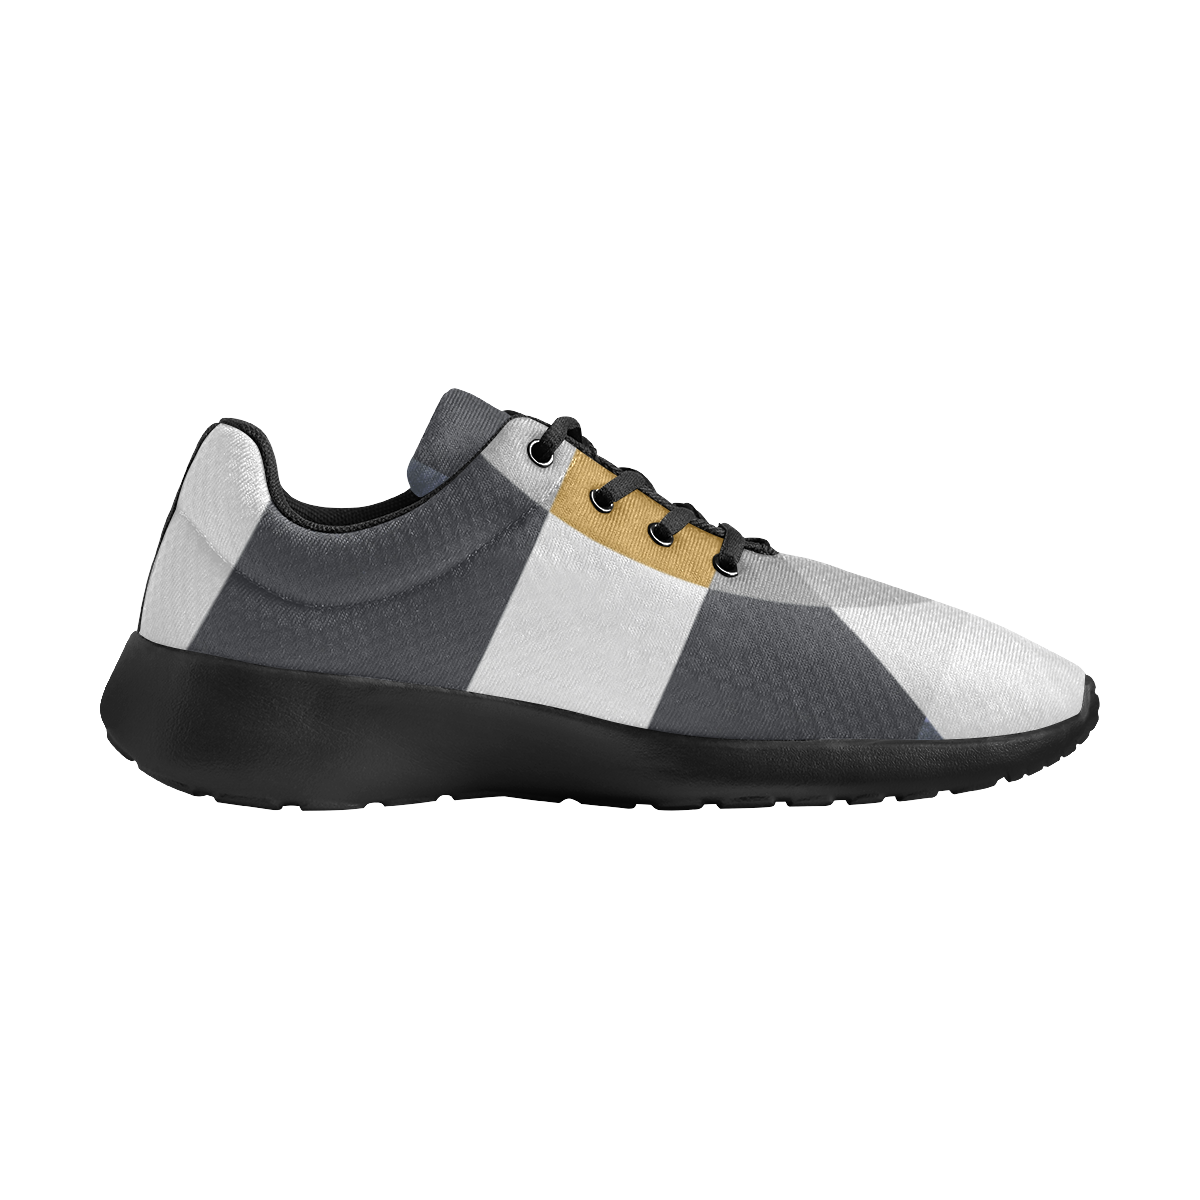 Espacios grises Men's Athletic Shoes (Model 0200)